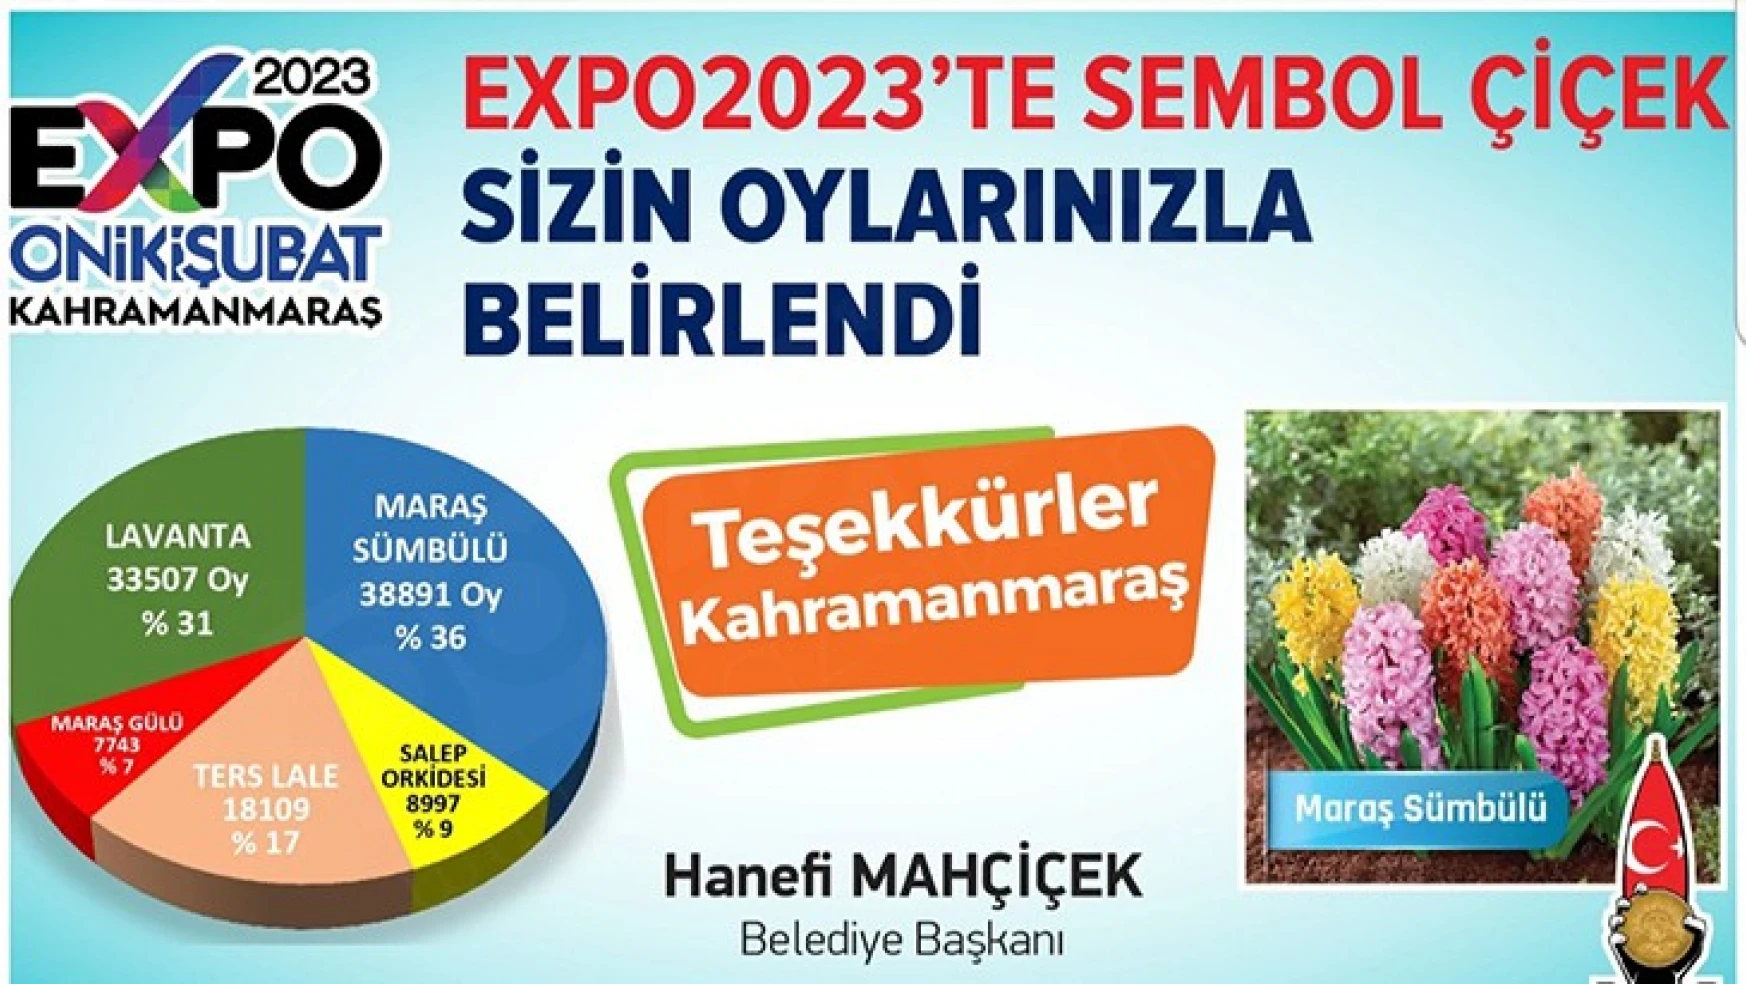 EXPO 2023 Kahramanmaraş'ın sembol çiçeği belli oldu